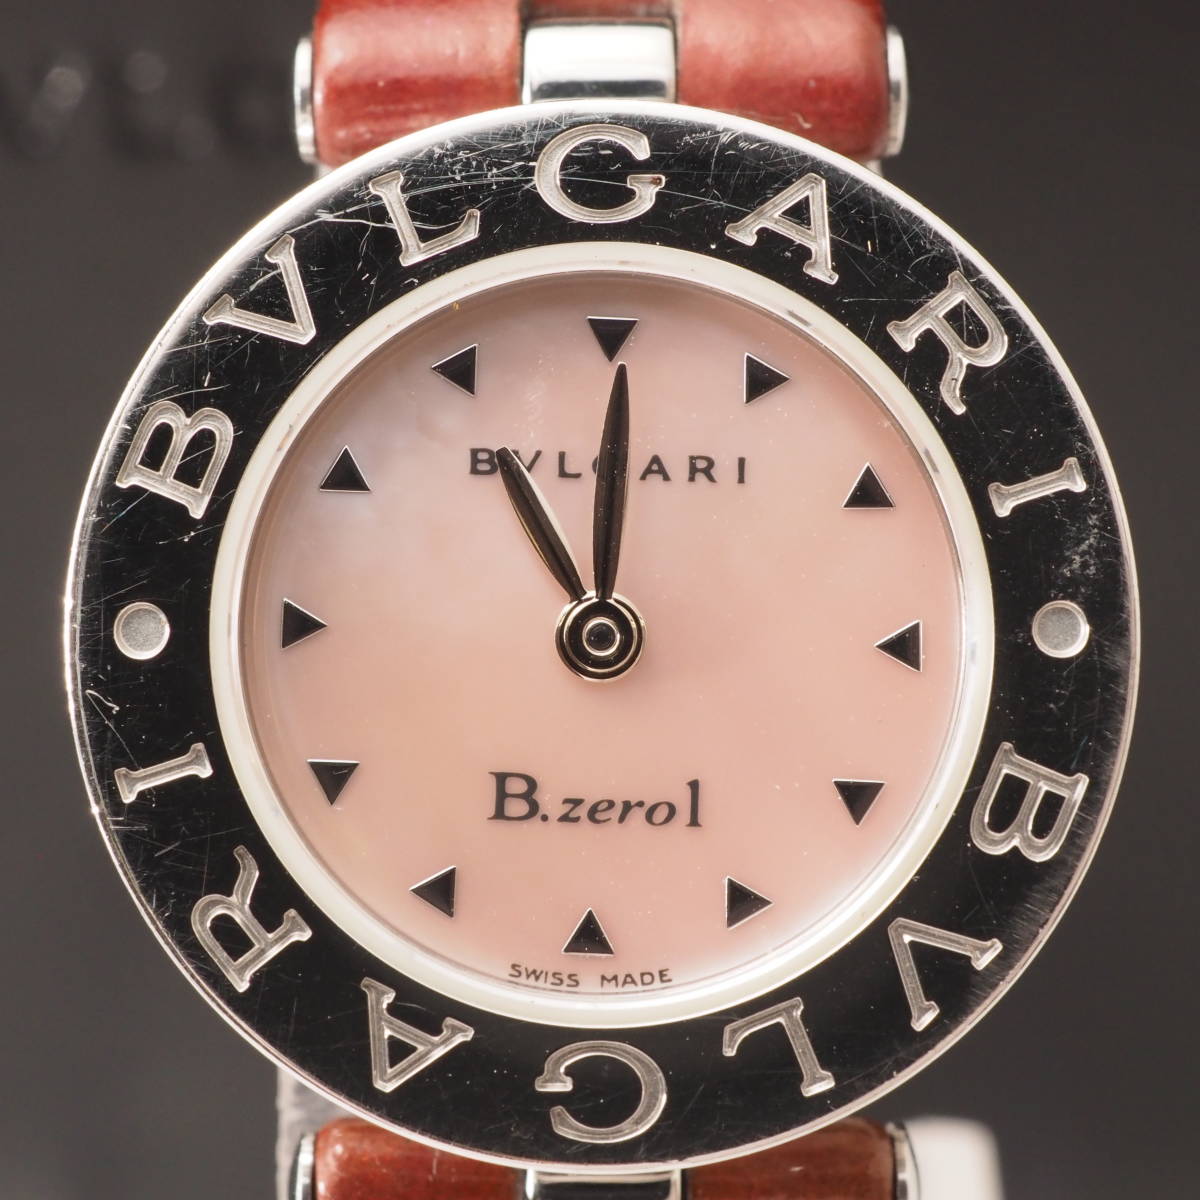 ブルガリ レディース腕時計 B Zero1 Bvlgari Bz22s クオーツ ステンレススチール バングルウォッチ ビーゼロワン ブラック文字盤 爆買い B Zero1